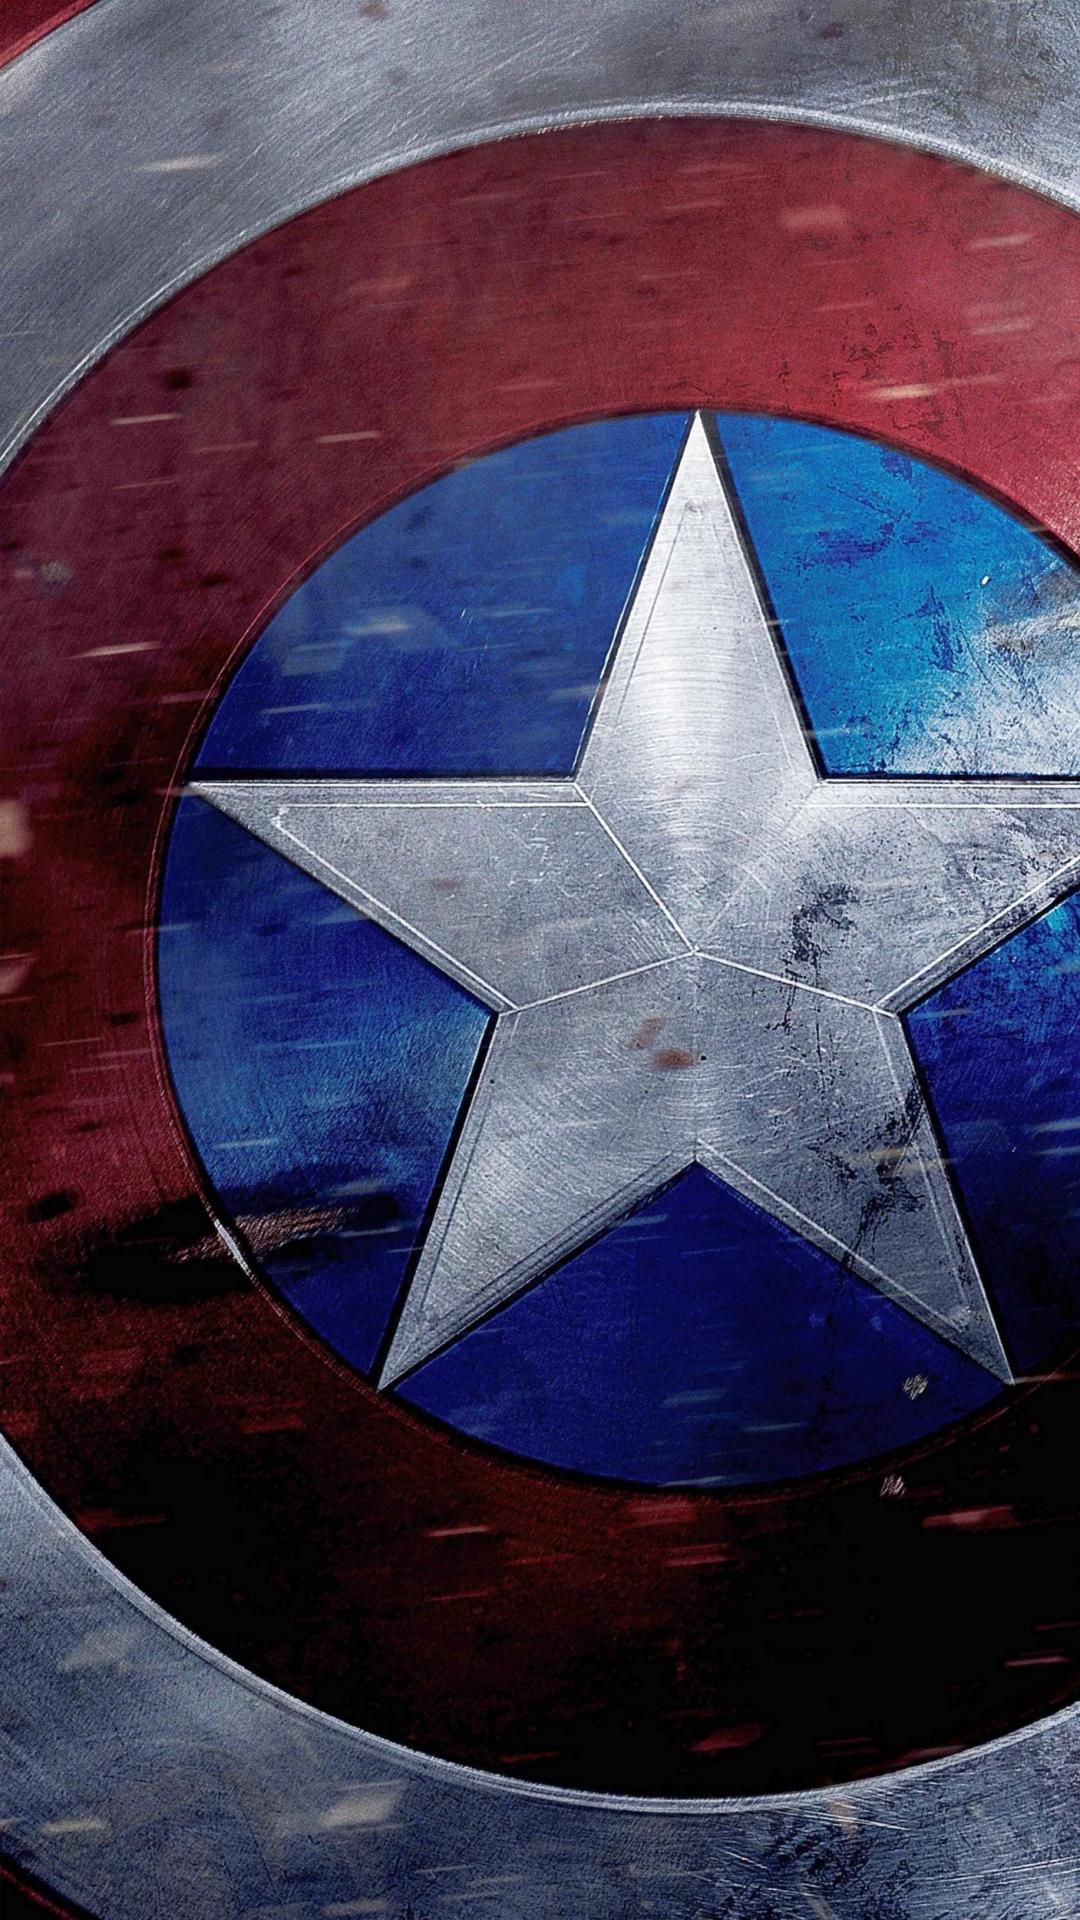 Captain America Shield Wallpaper HD Image On America